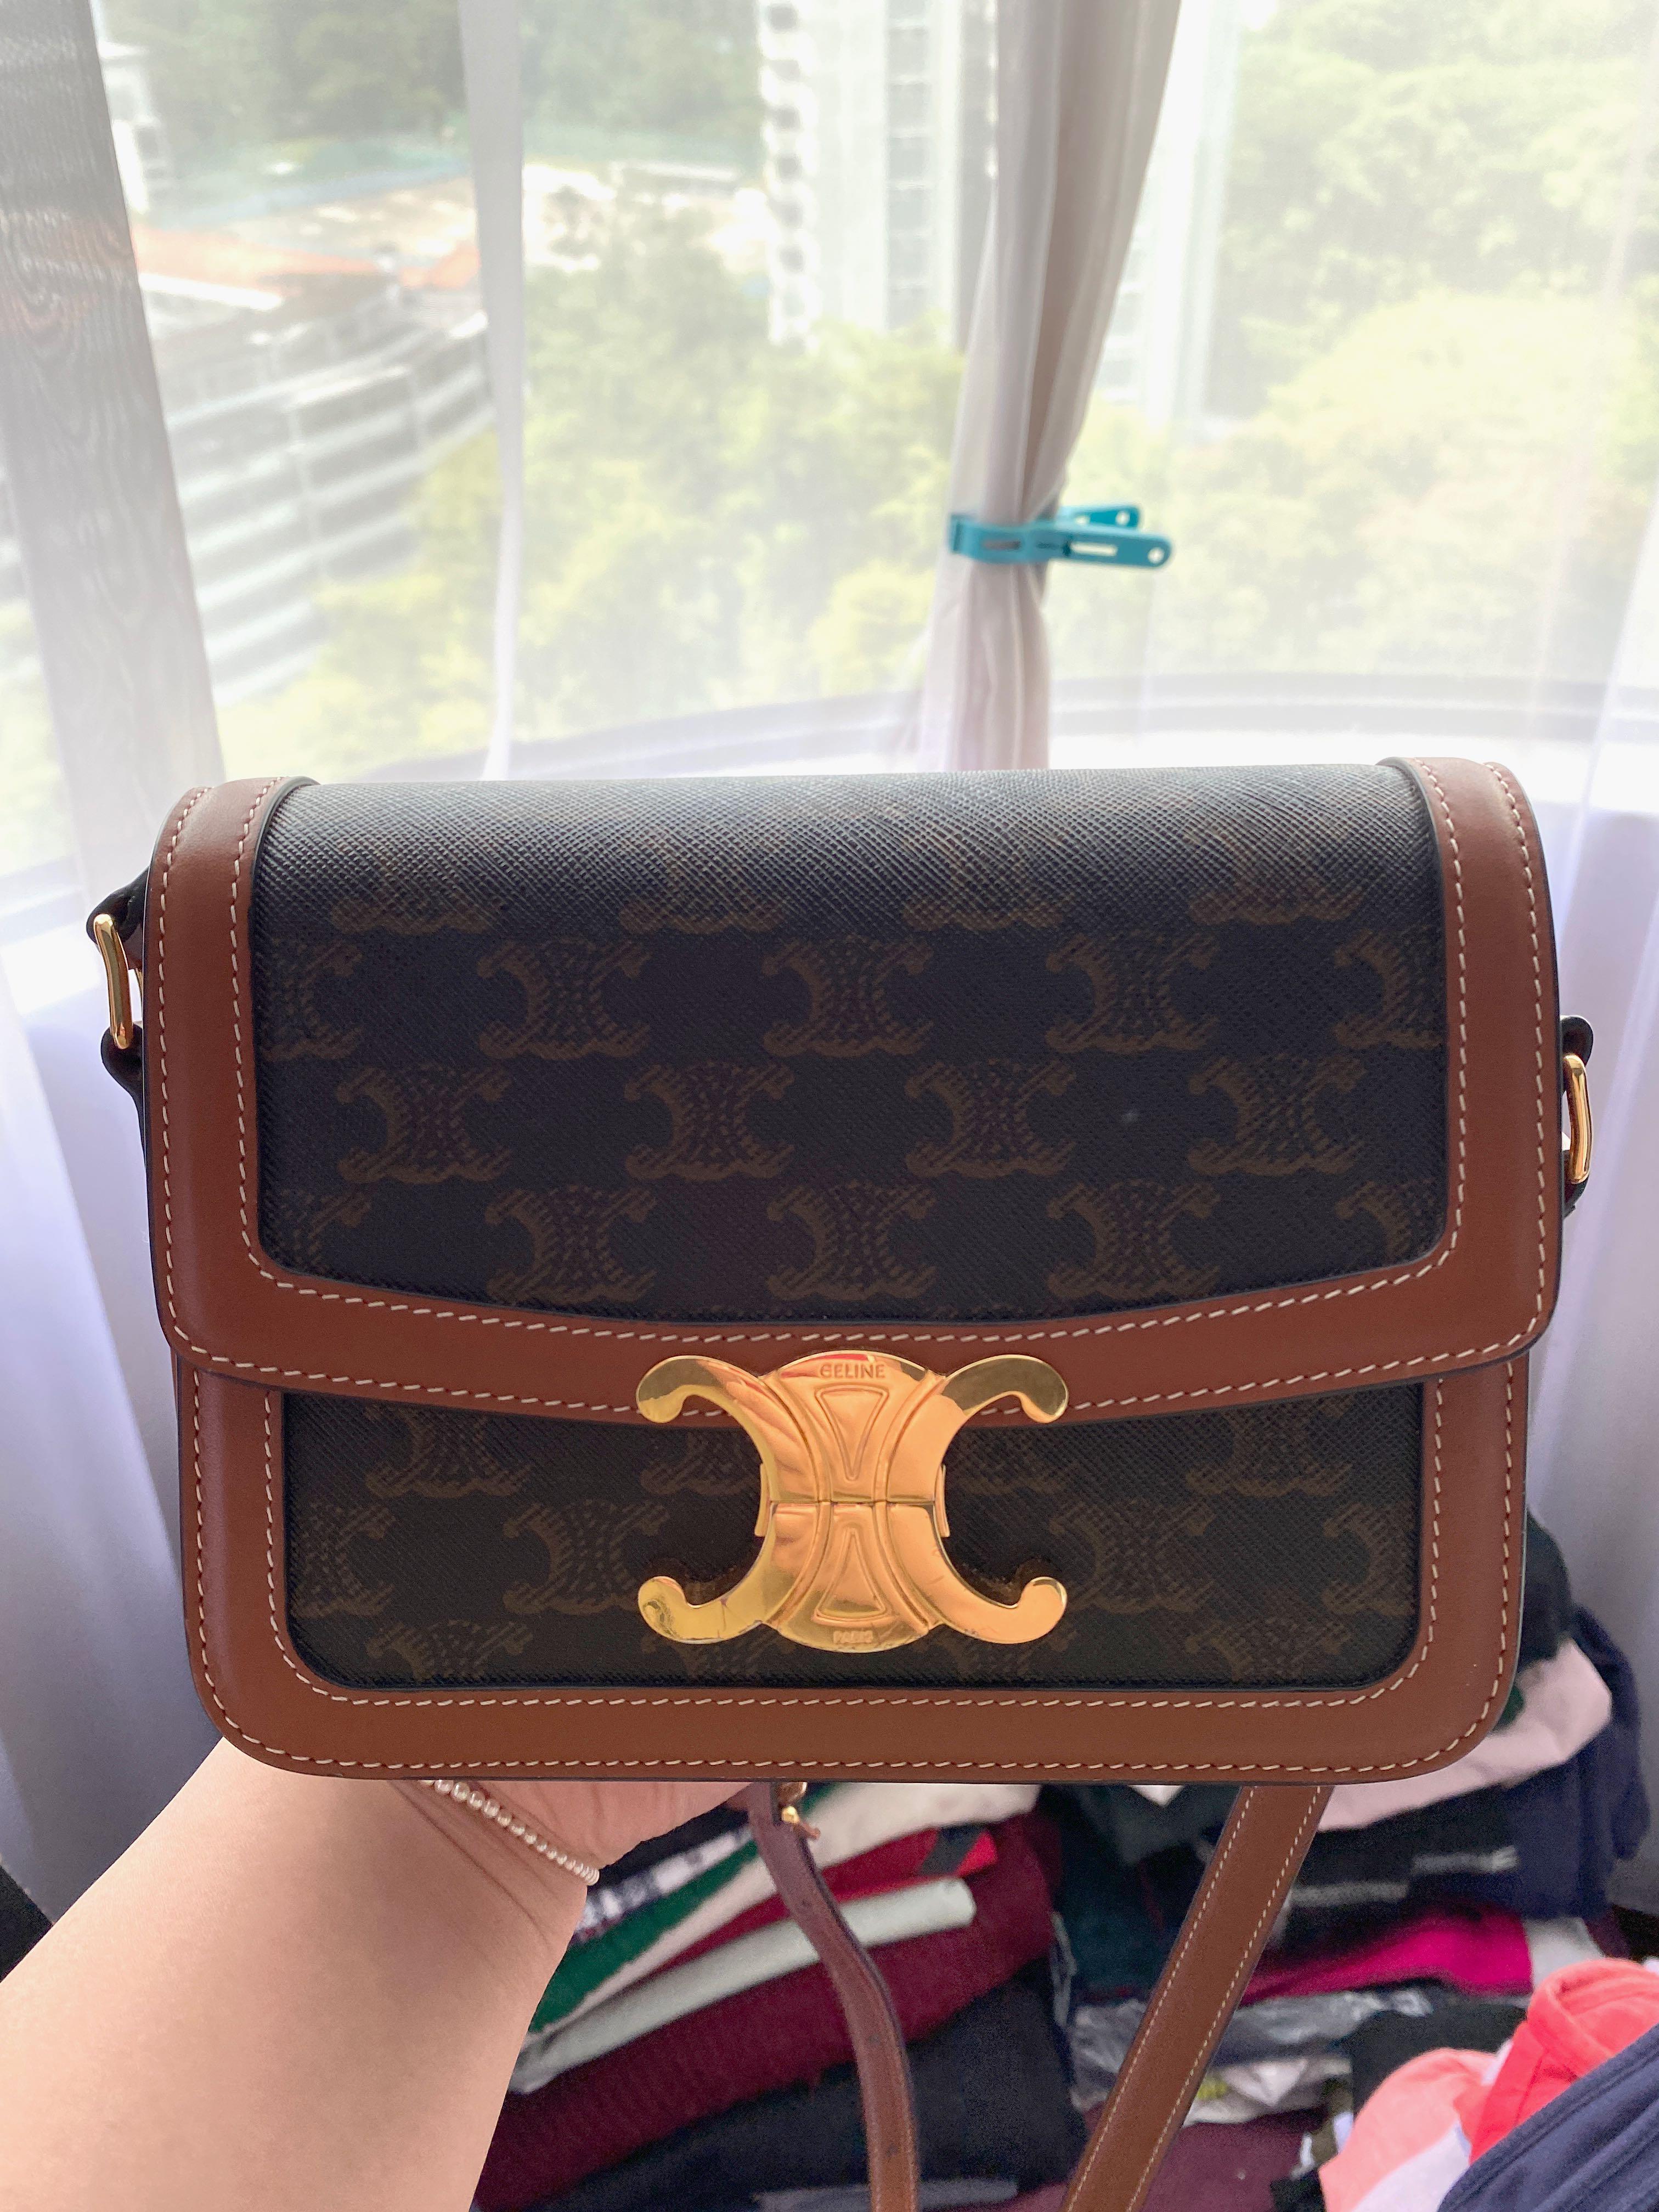 See Blackpink's Lisa Style the Celine Tabou Bag